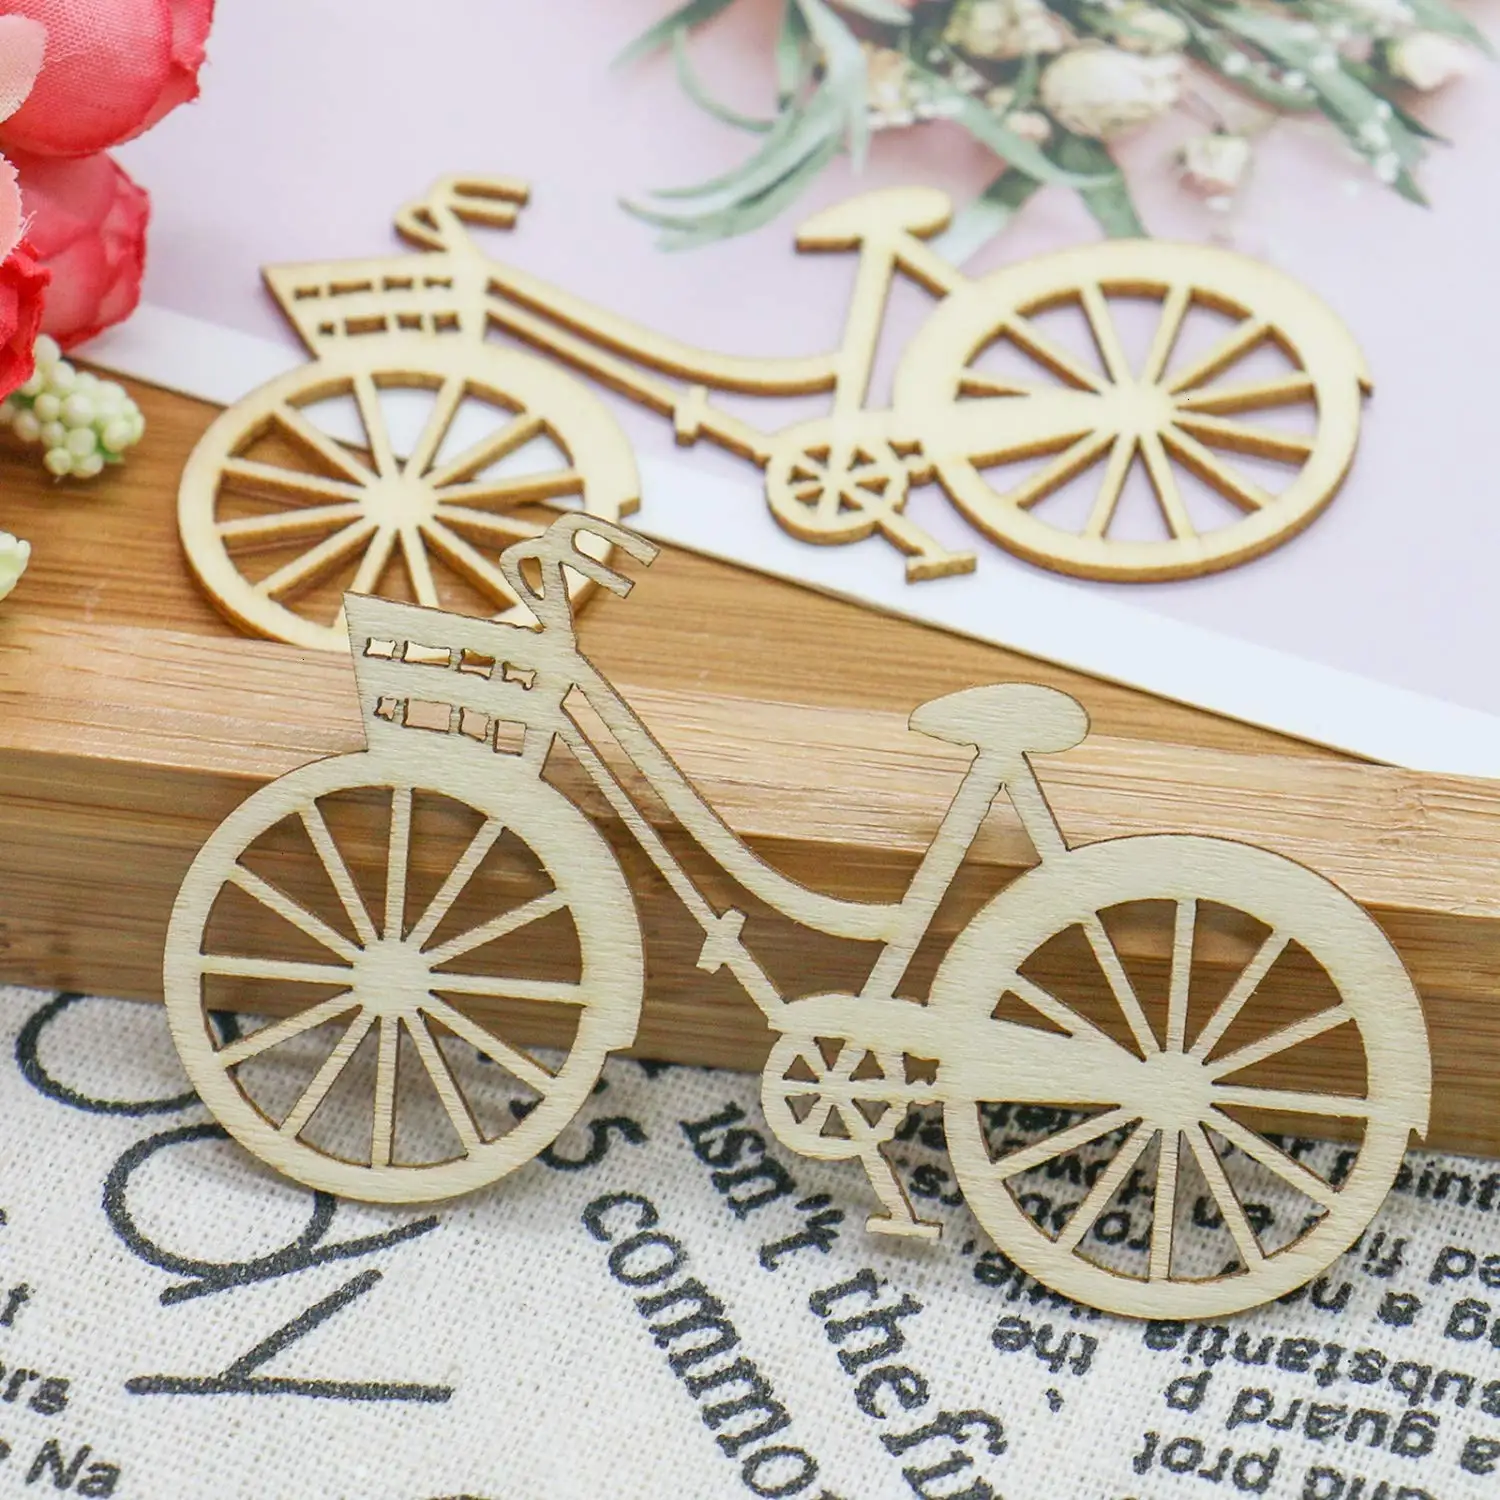 10 件木制自行车自行车镂空单板切片工艺品点缀 diy 手工装饰装饰婚礼